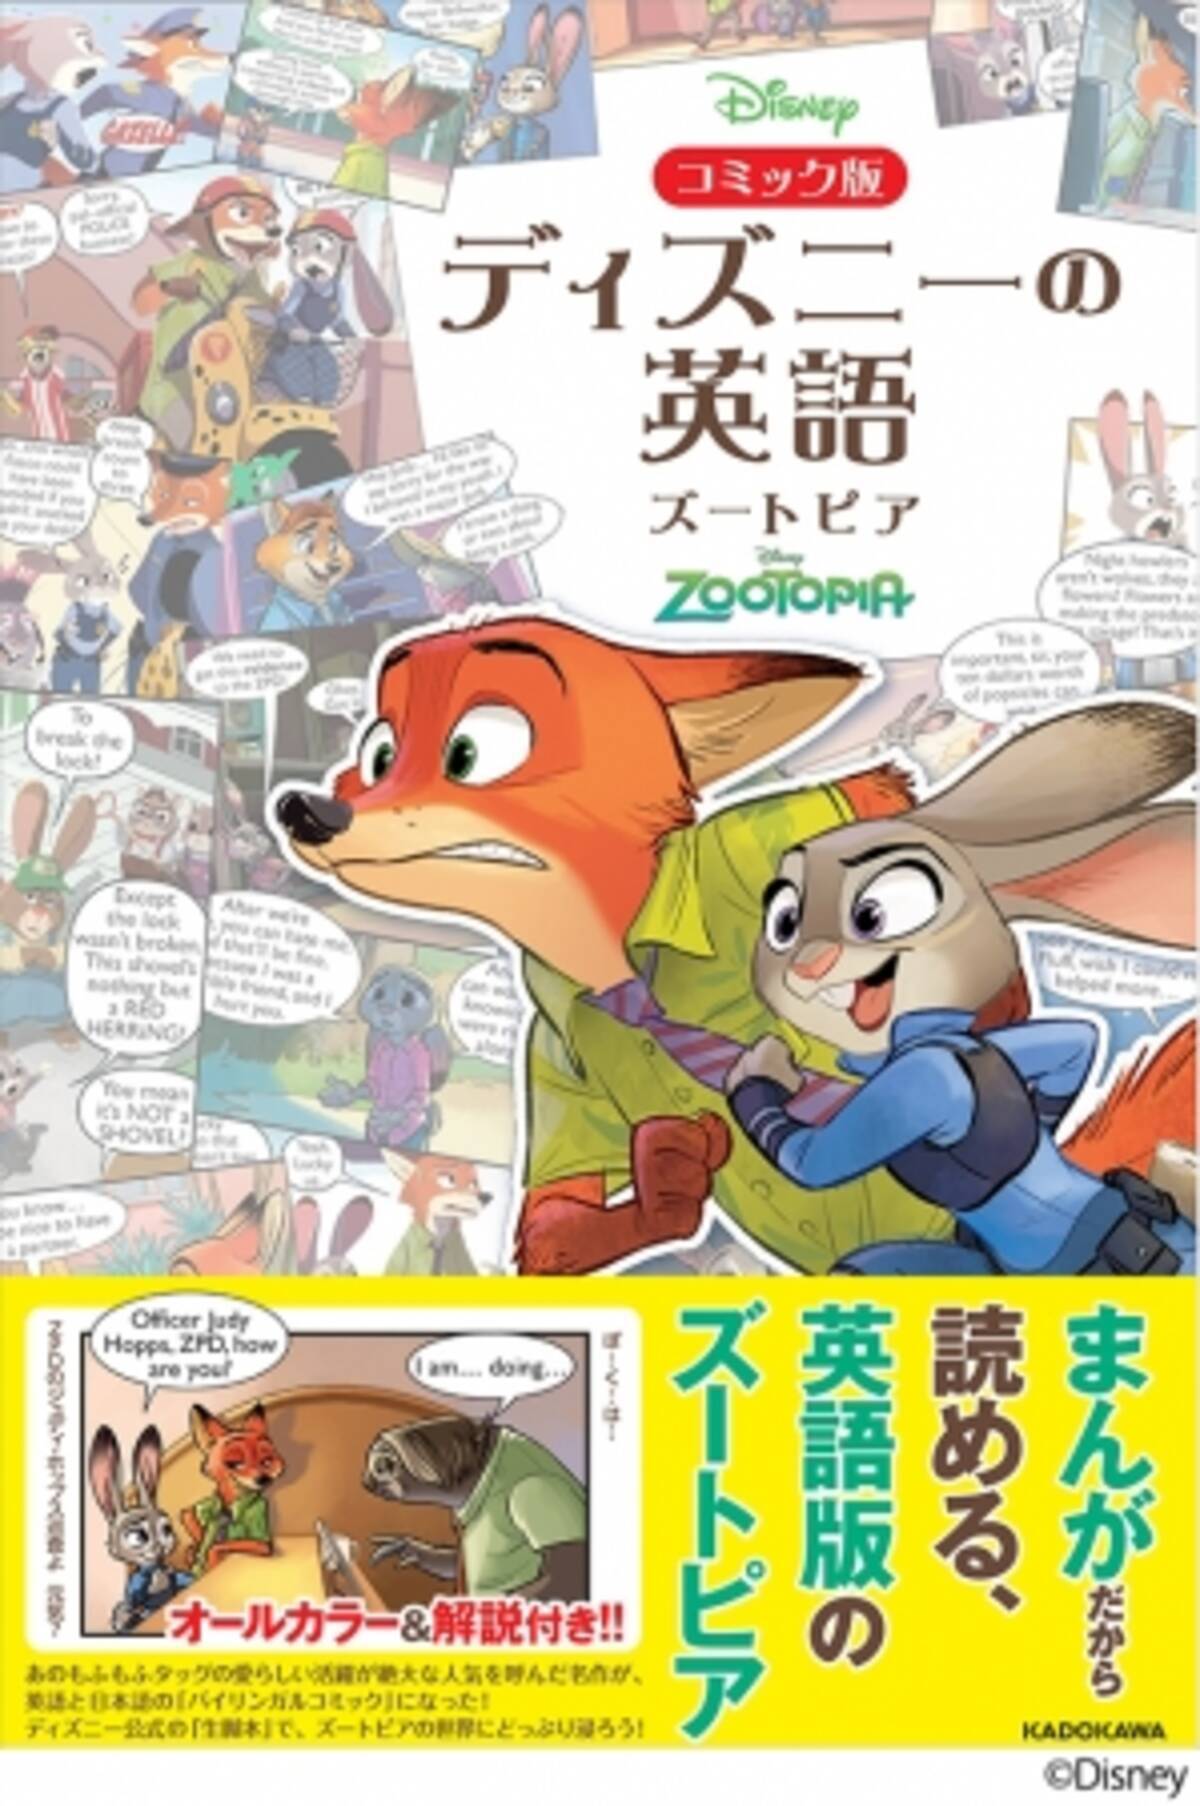 日本初登場のエピソードも収録 ズートピアで 楽しく英語を身につけよう コミック版 ディズニーの英語 ズートピア 刊行 16年11月30日 エキサイトニュース